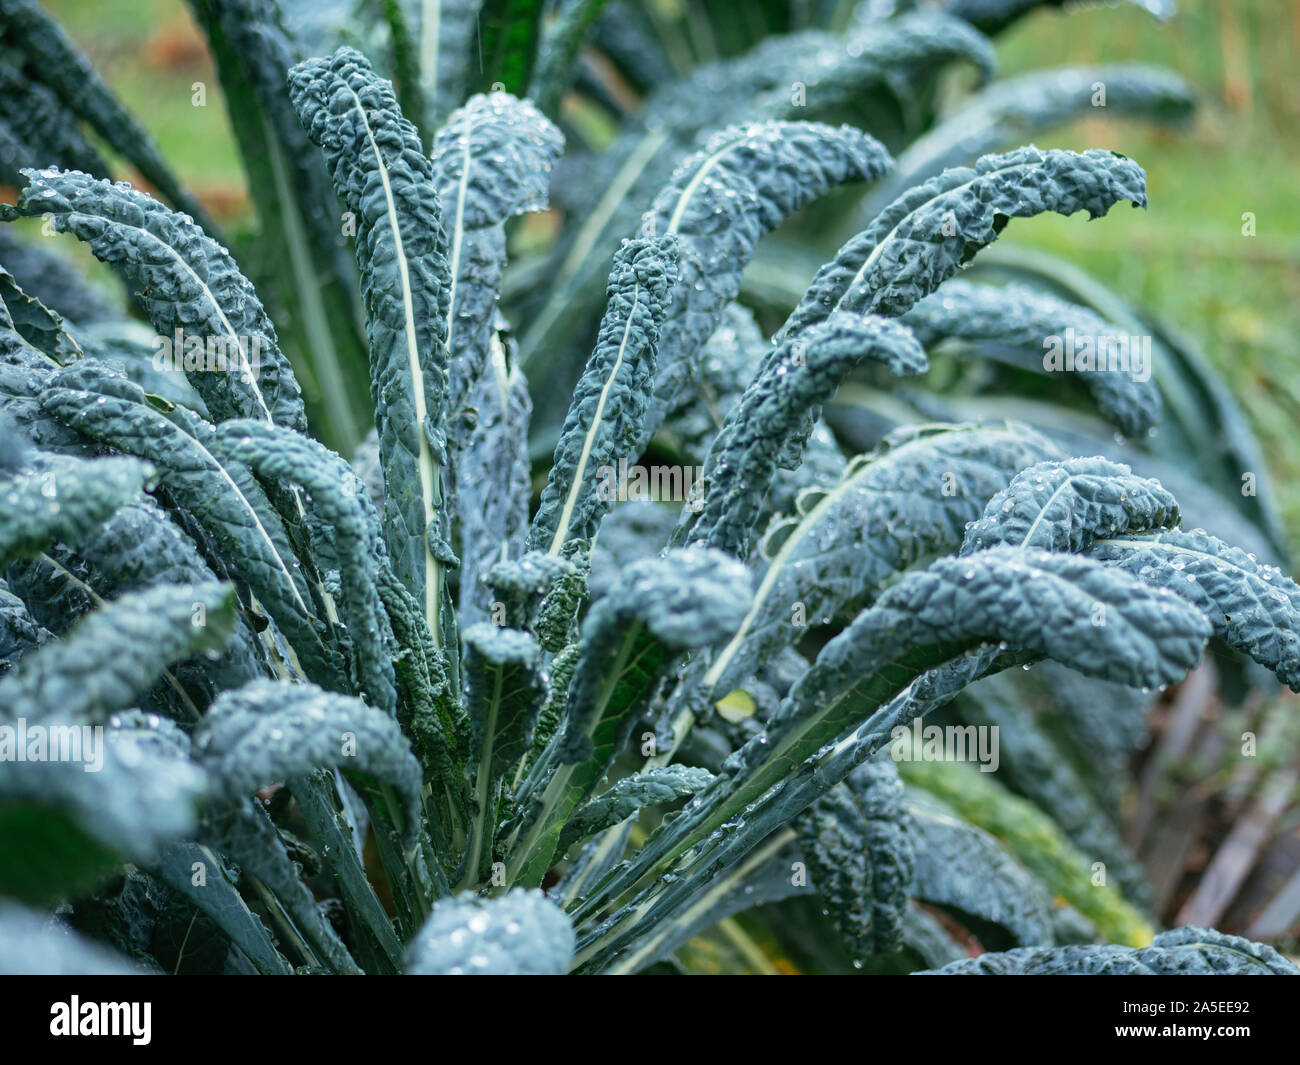 'Nero di Toscana' kale growing in a vegetable garden. Stock Photo